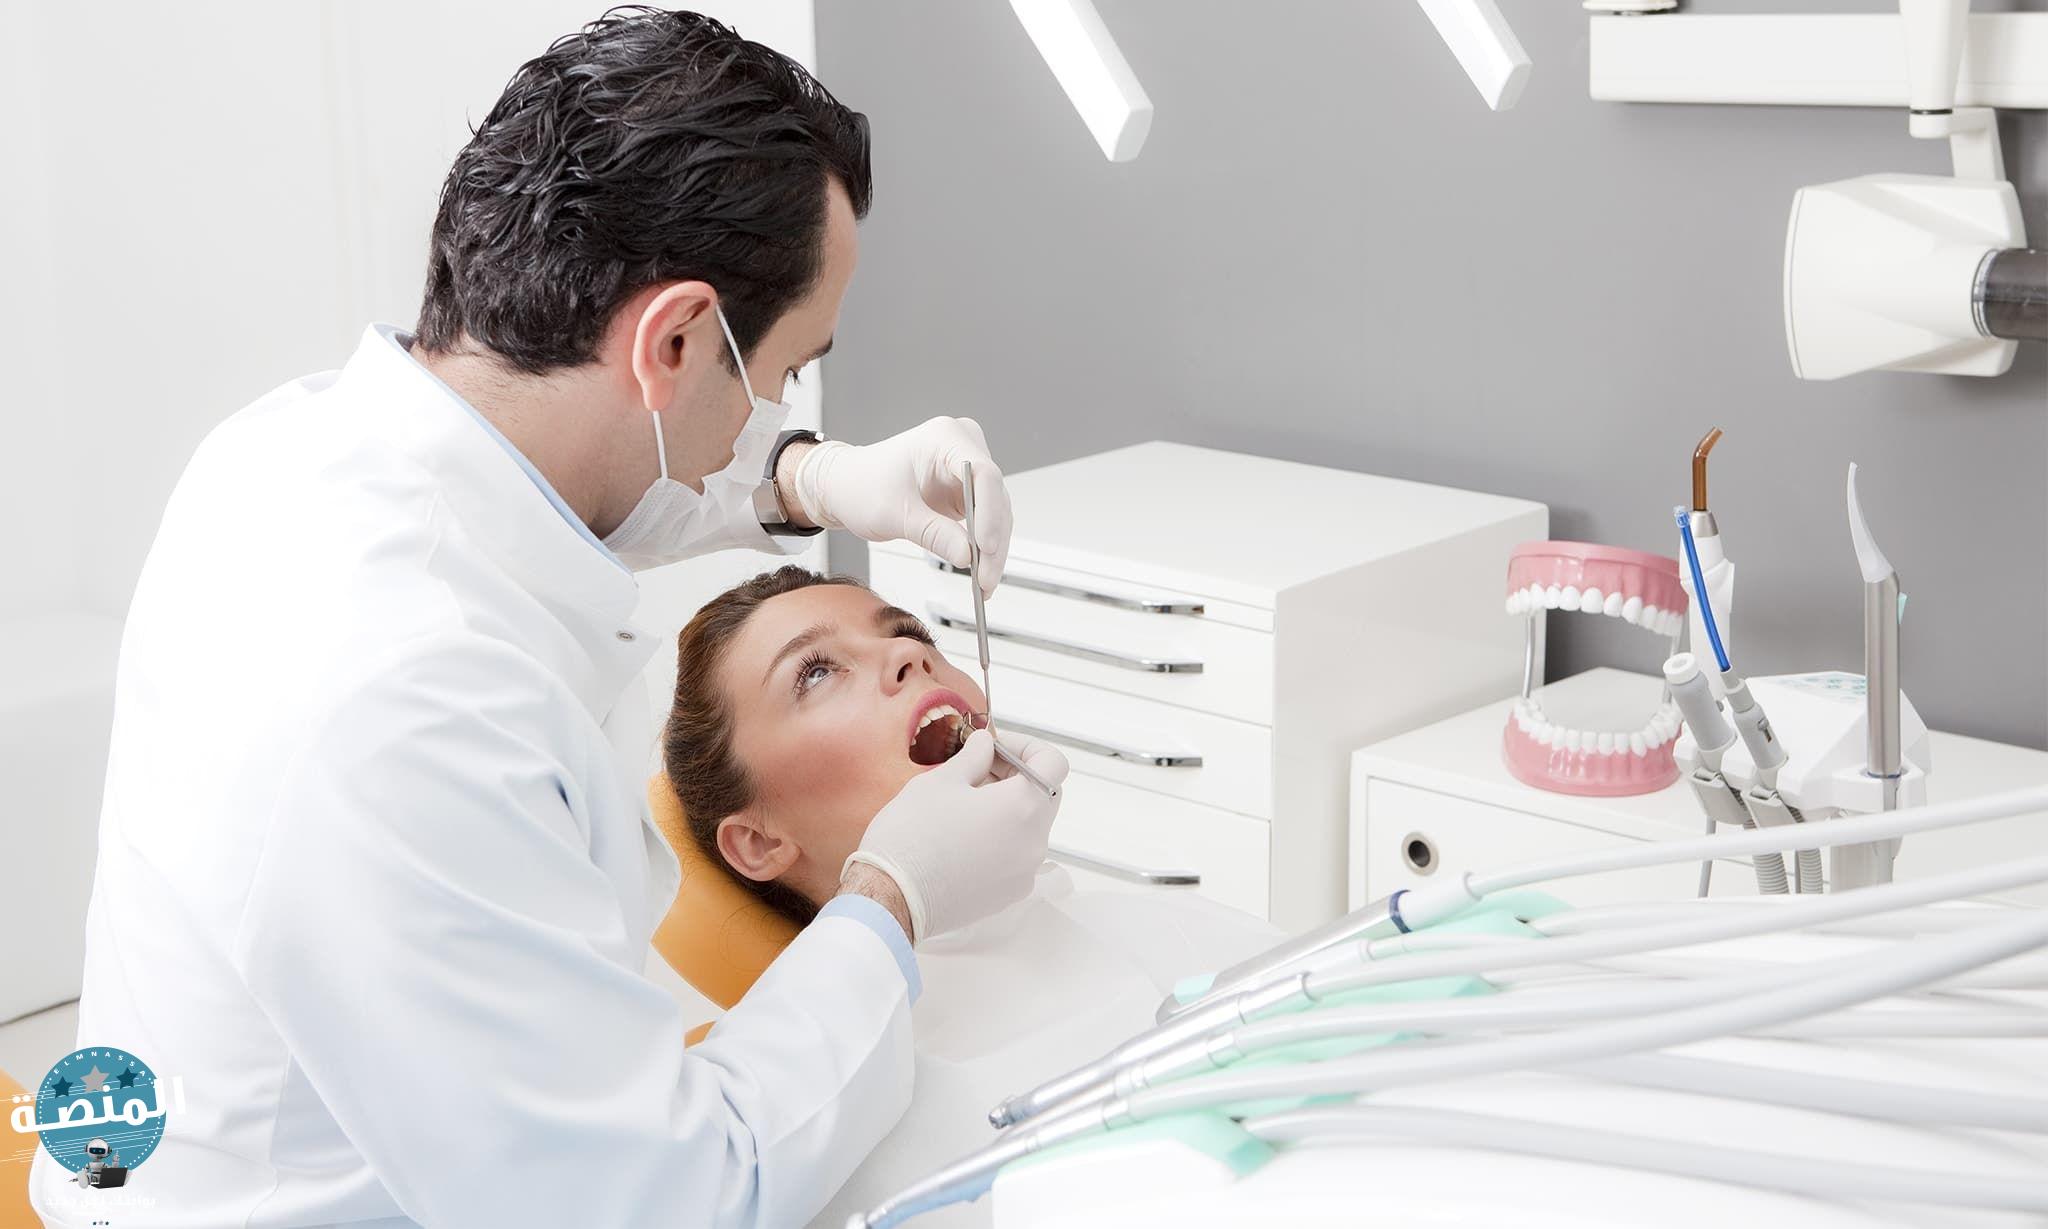 تعرف على 3 من أهم خدمات مراكز الأسنان التجميلية والعلاجية